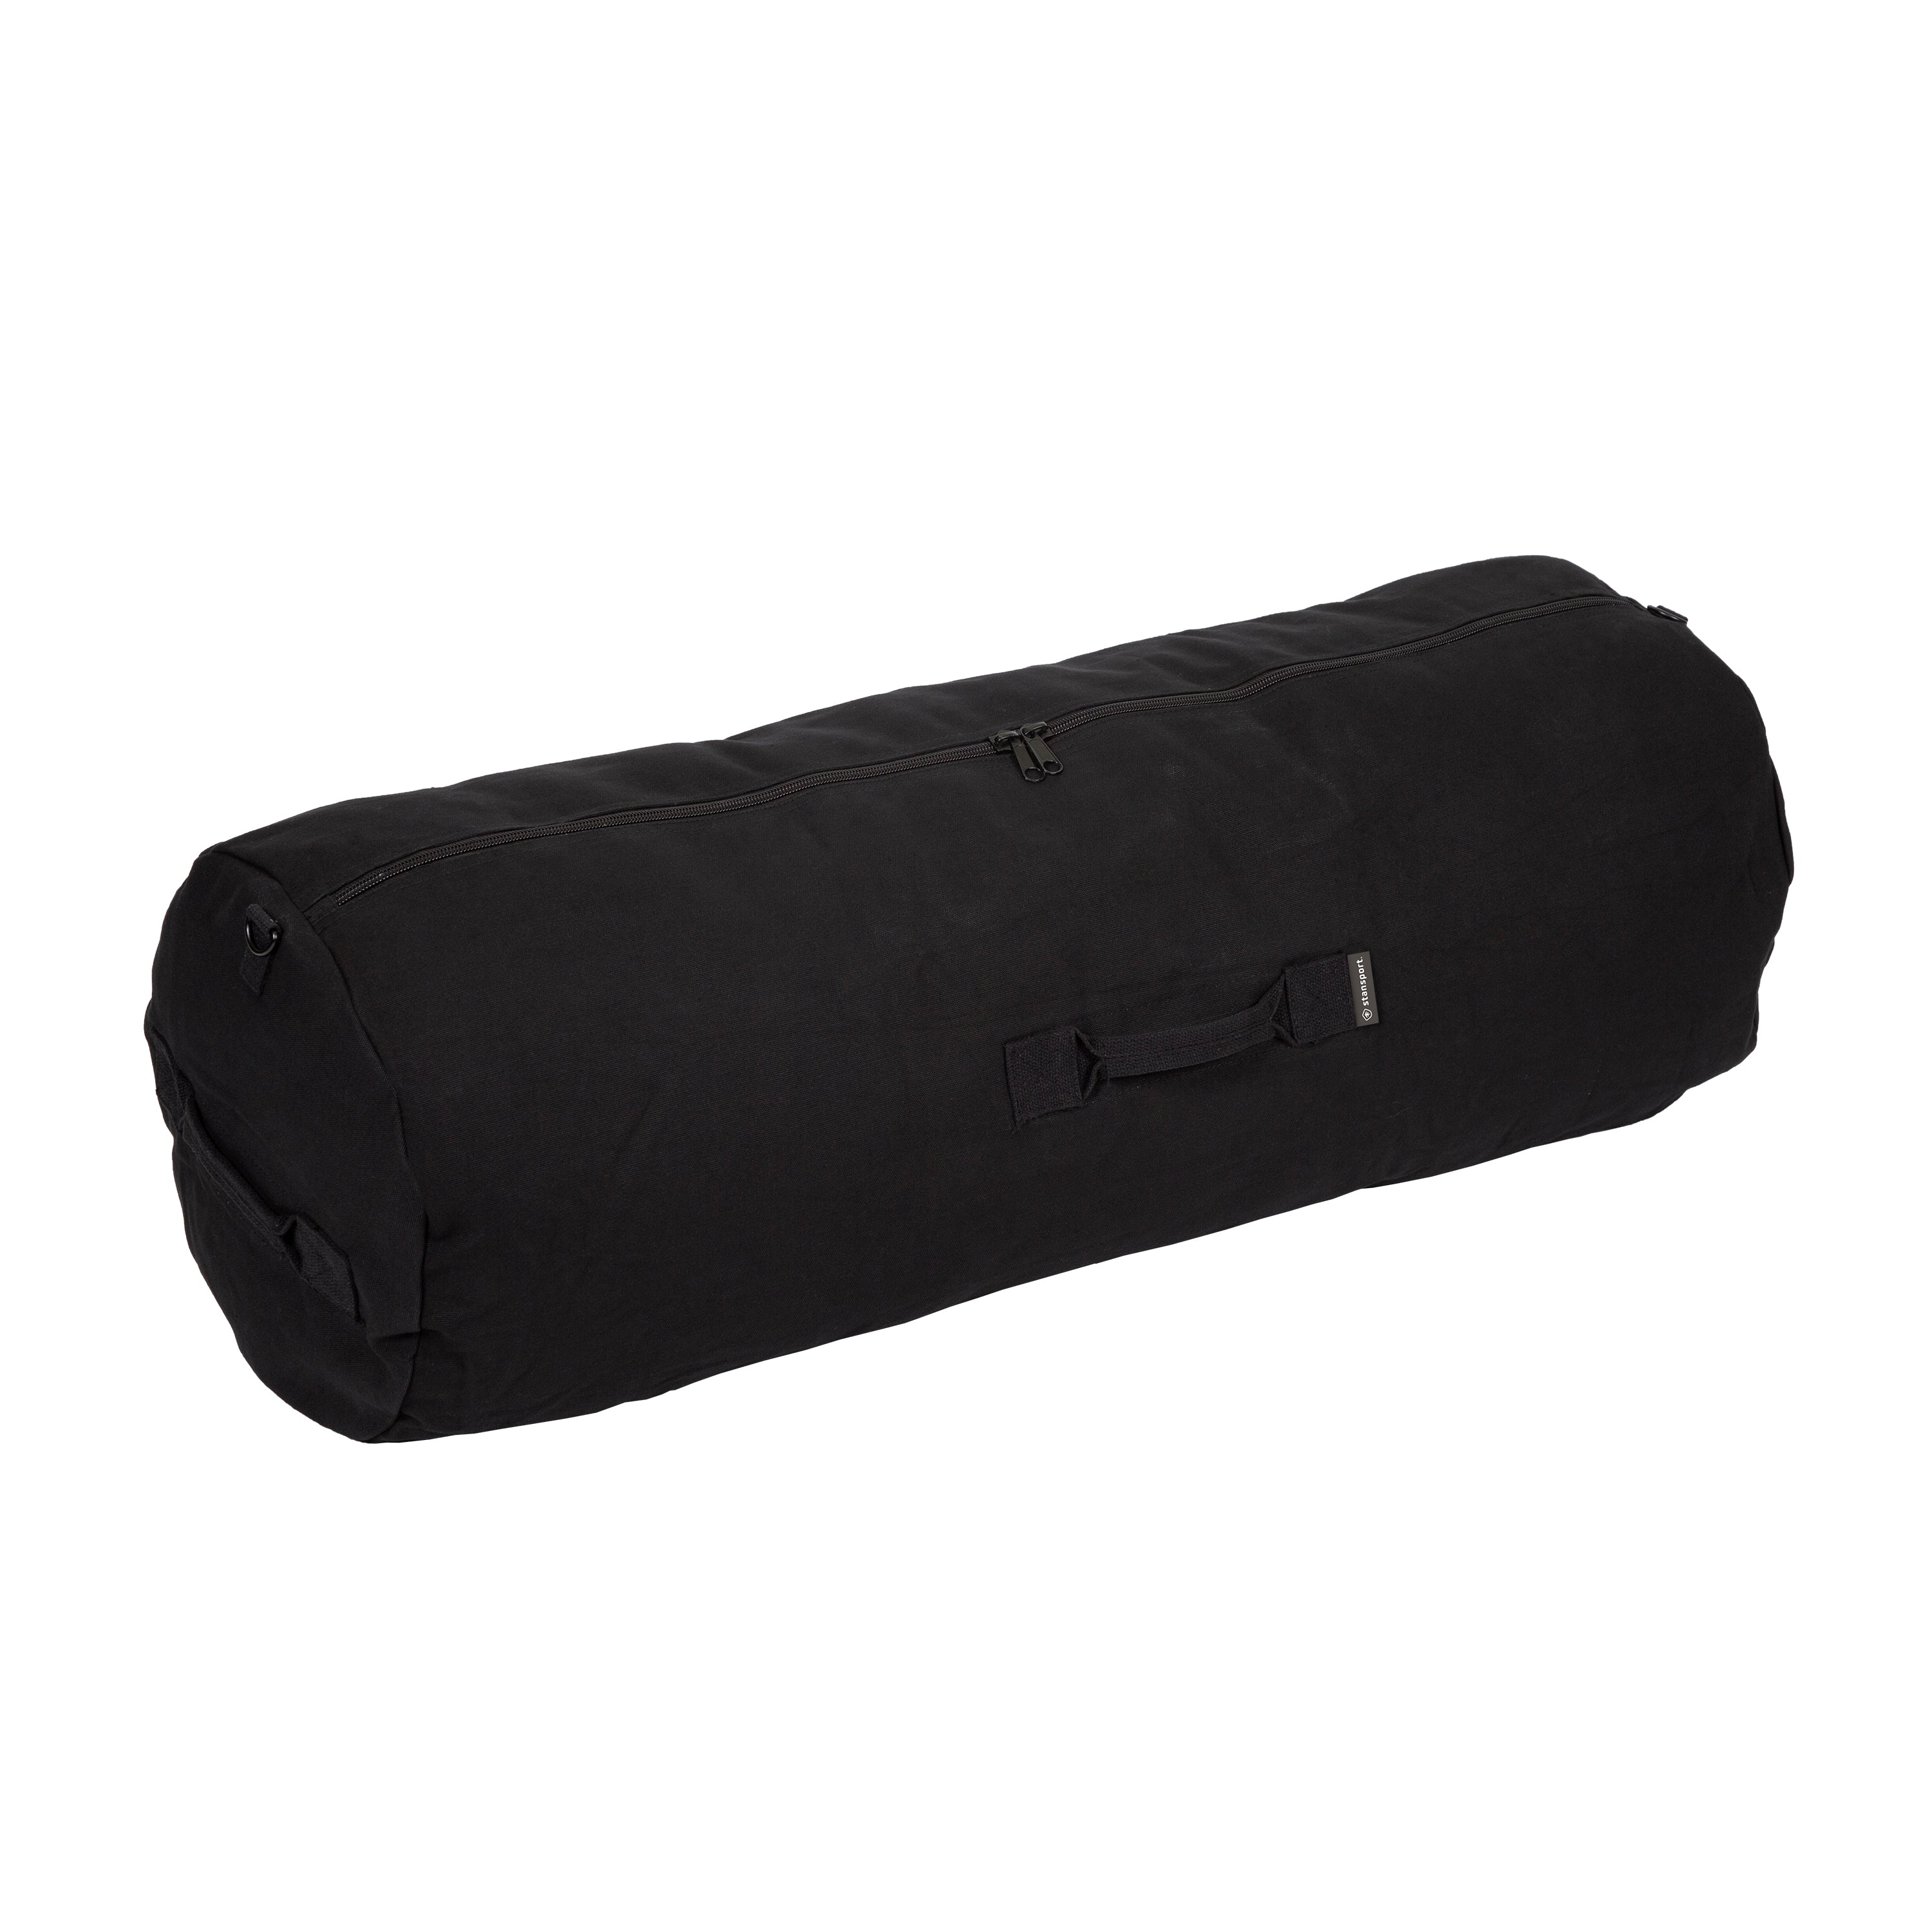 Duffel Bag With Zipper - Black - 42 In X 15 In X 15 In